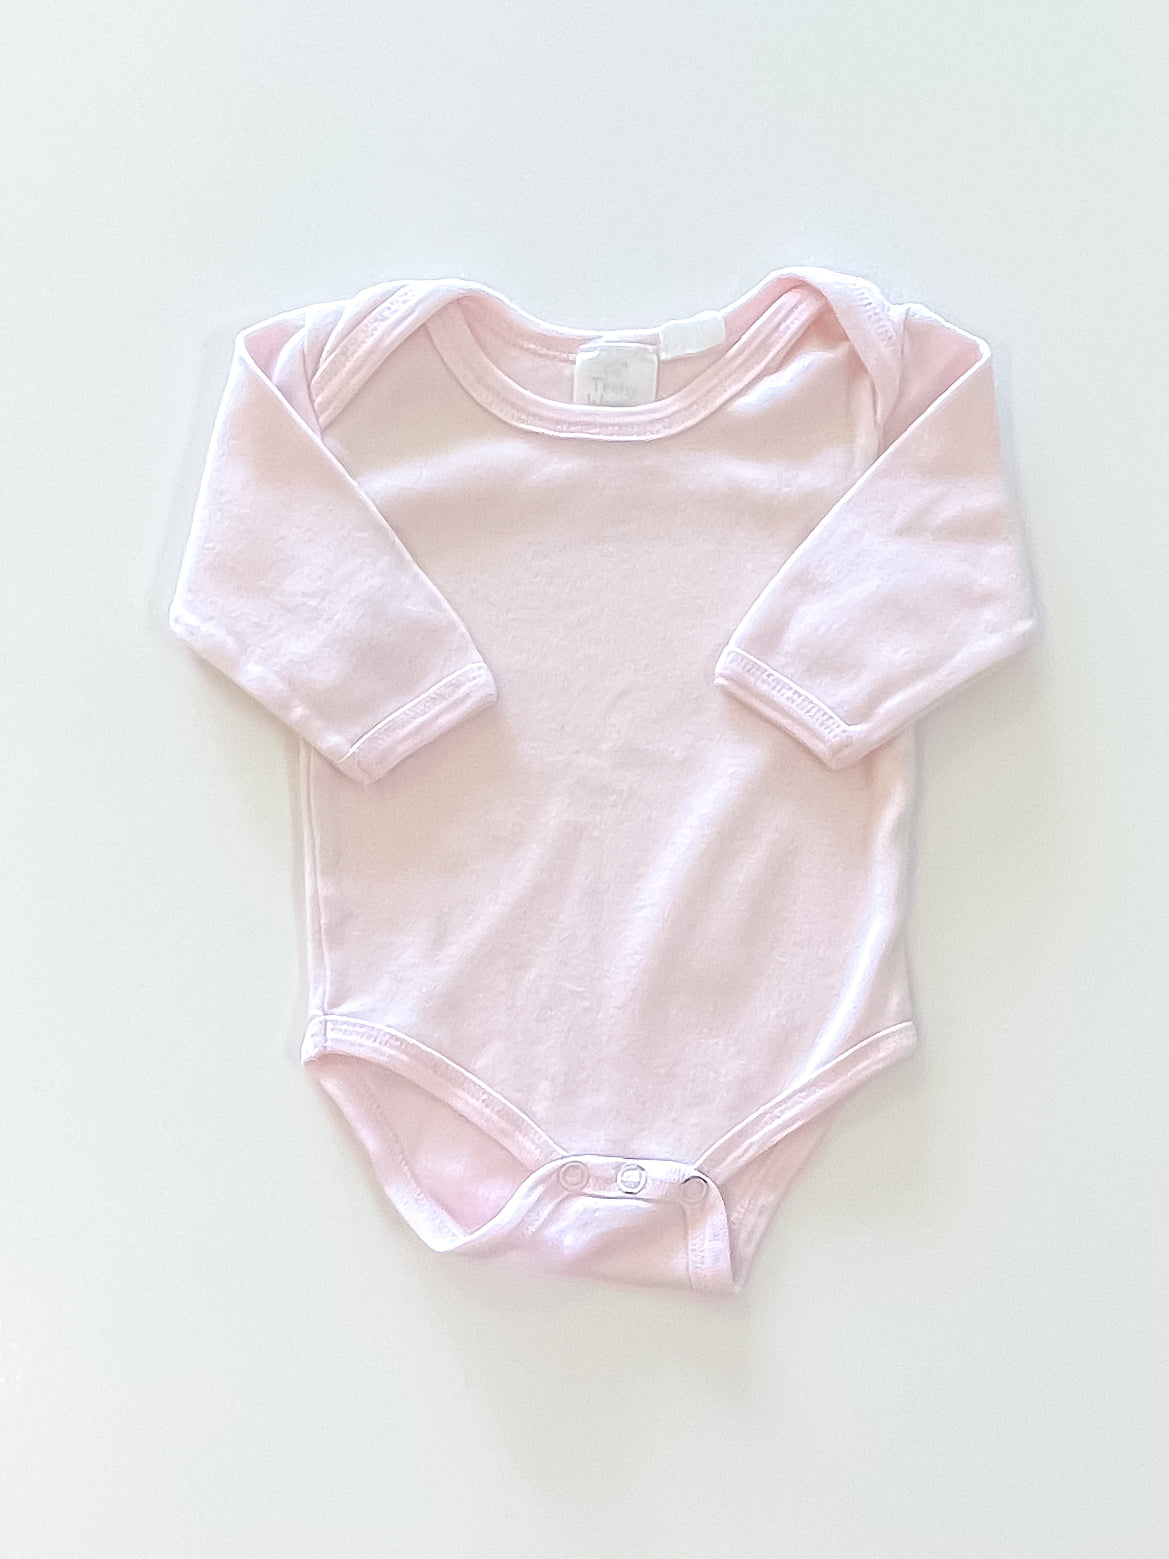 Teeny Weeny bodysuit - pink (newborn)